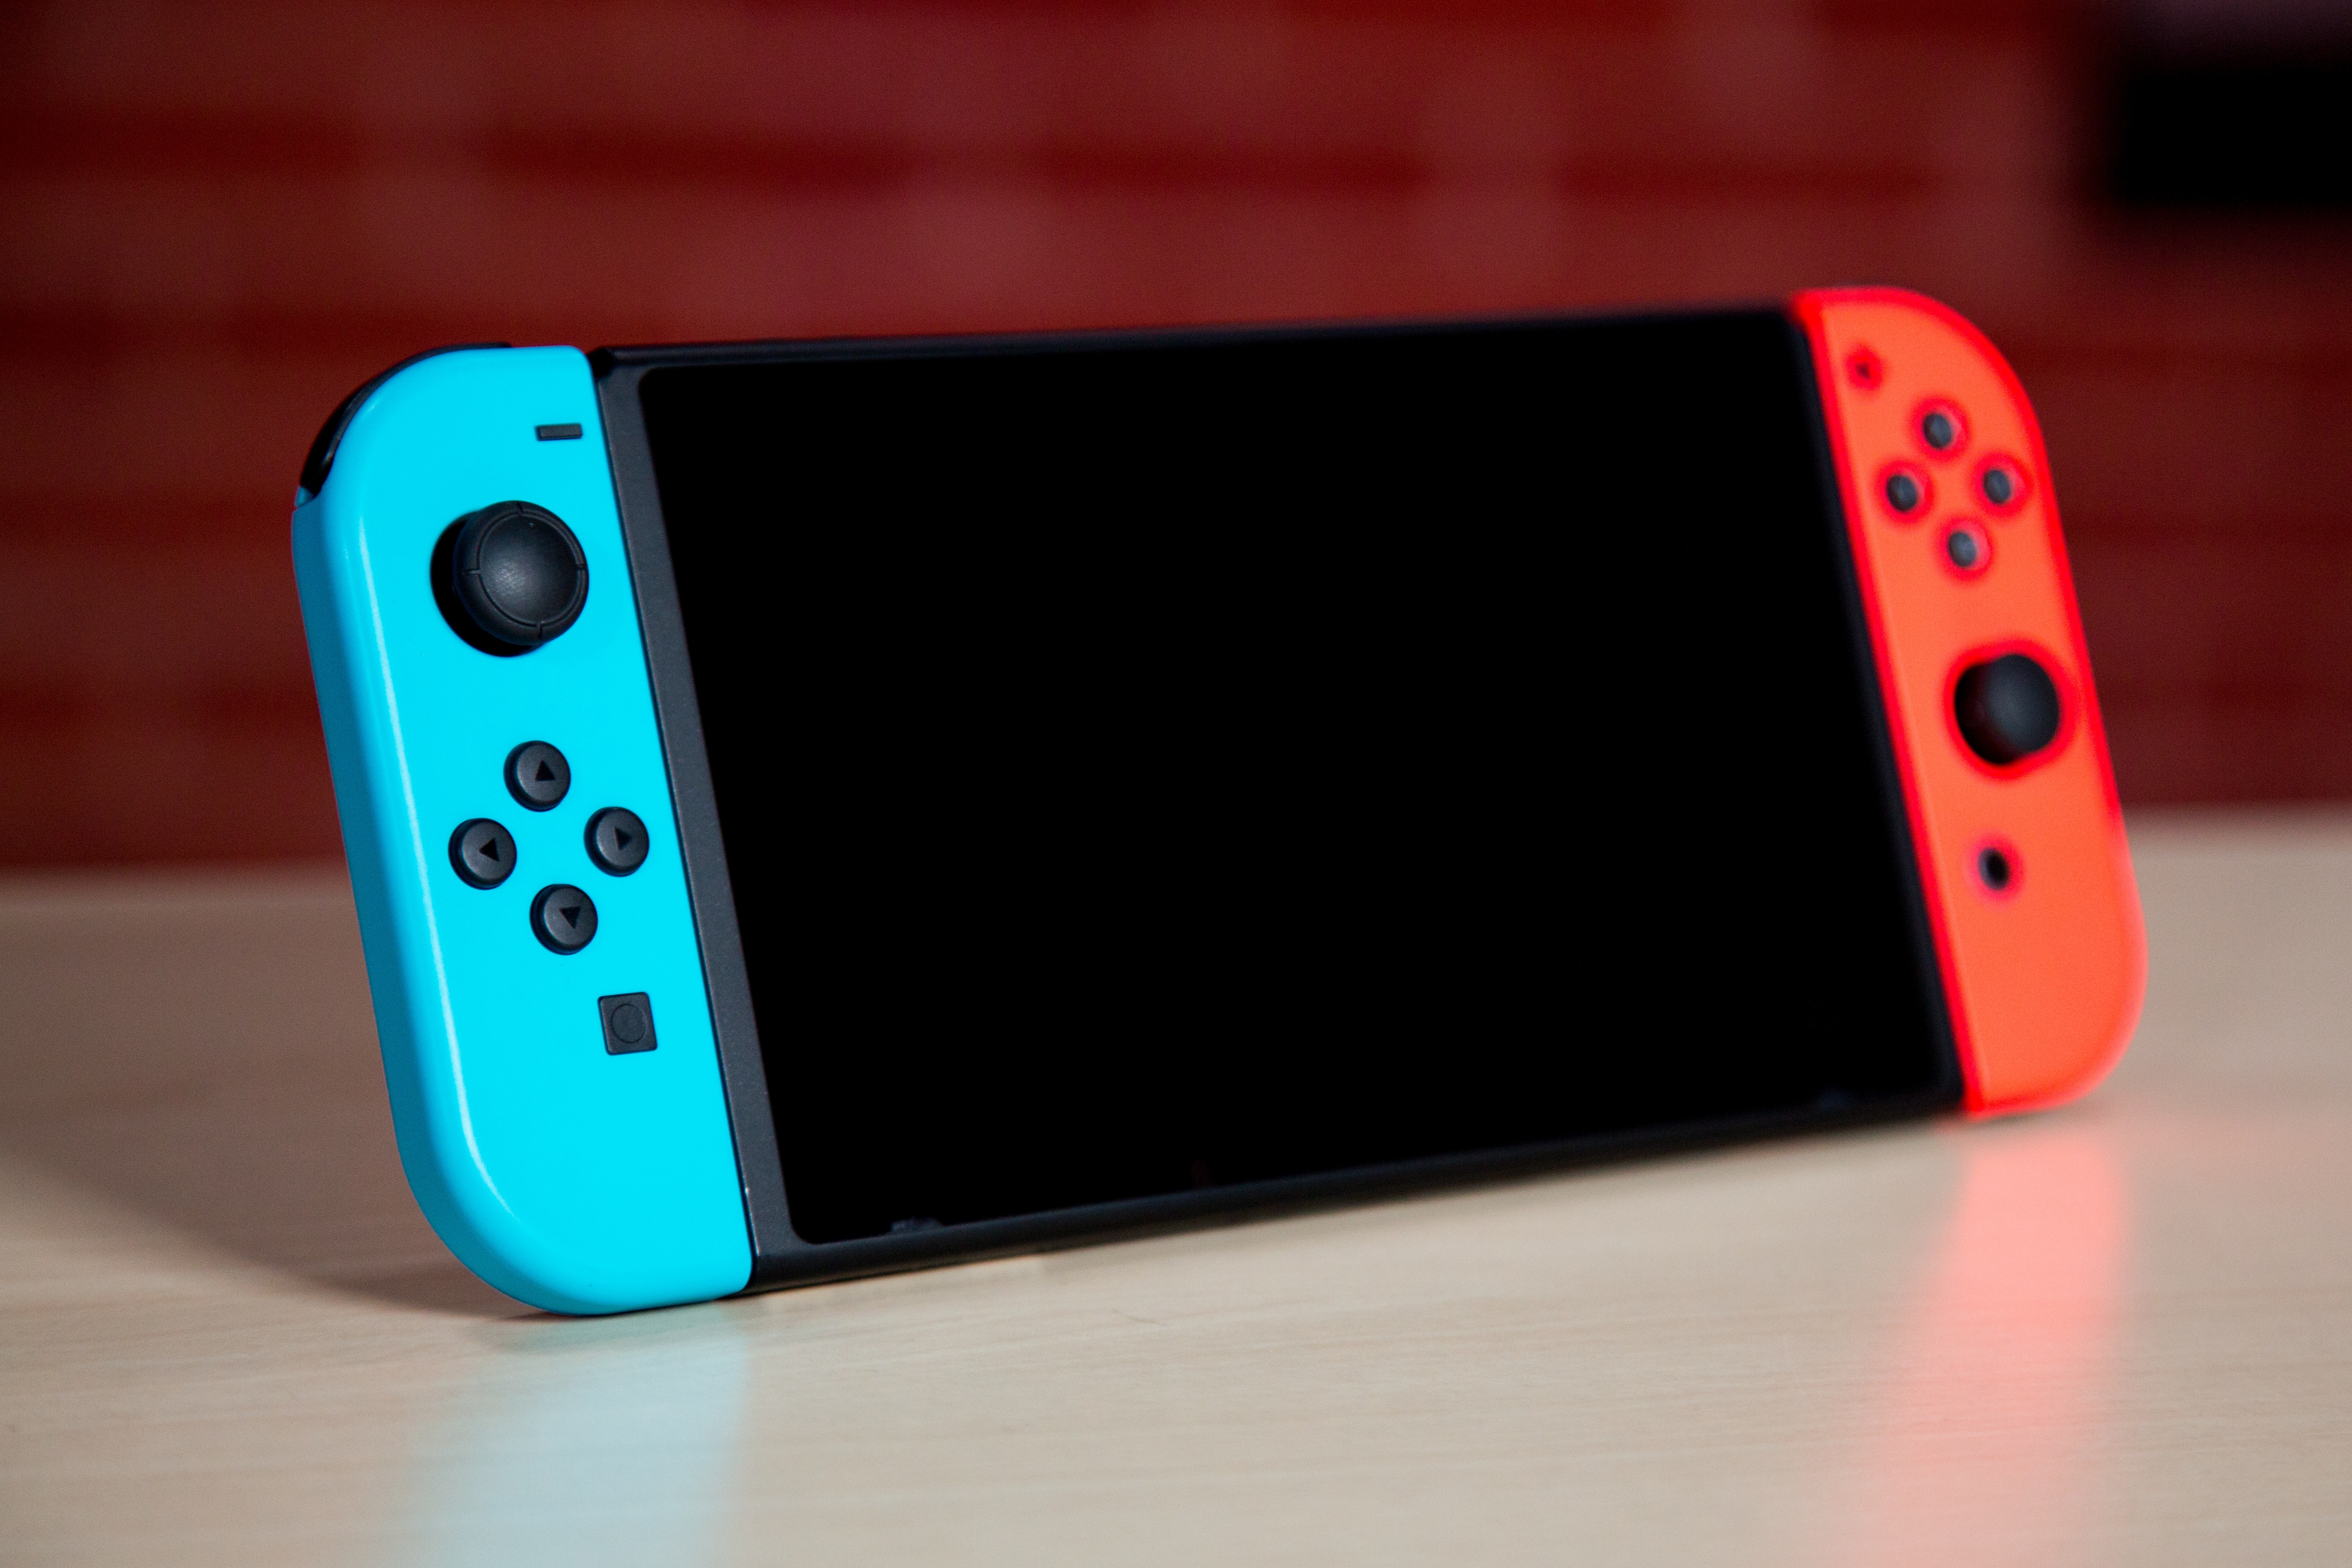 Nintendo Switch blir Japans mest sålda konsol genom tiderna